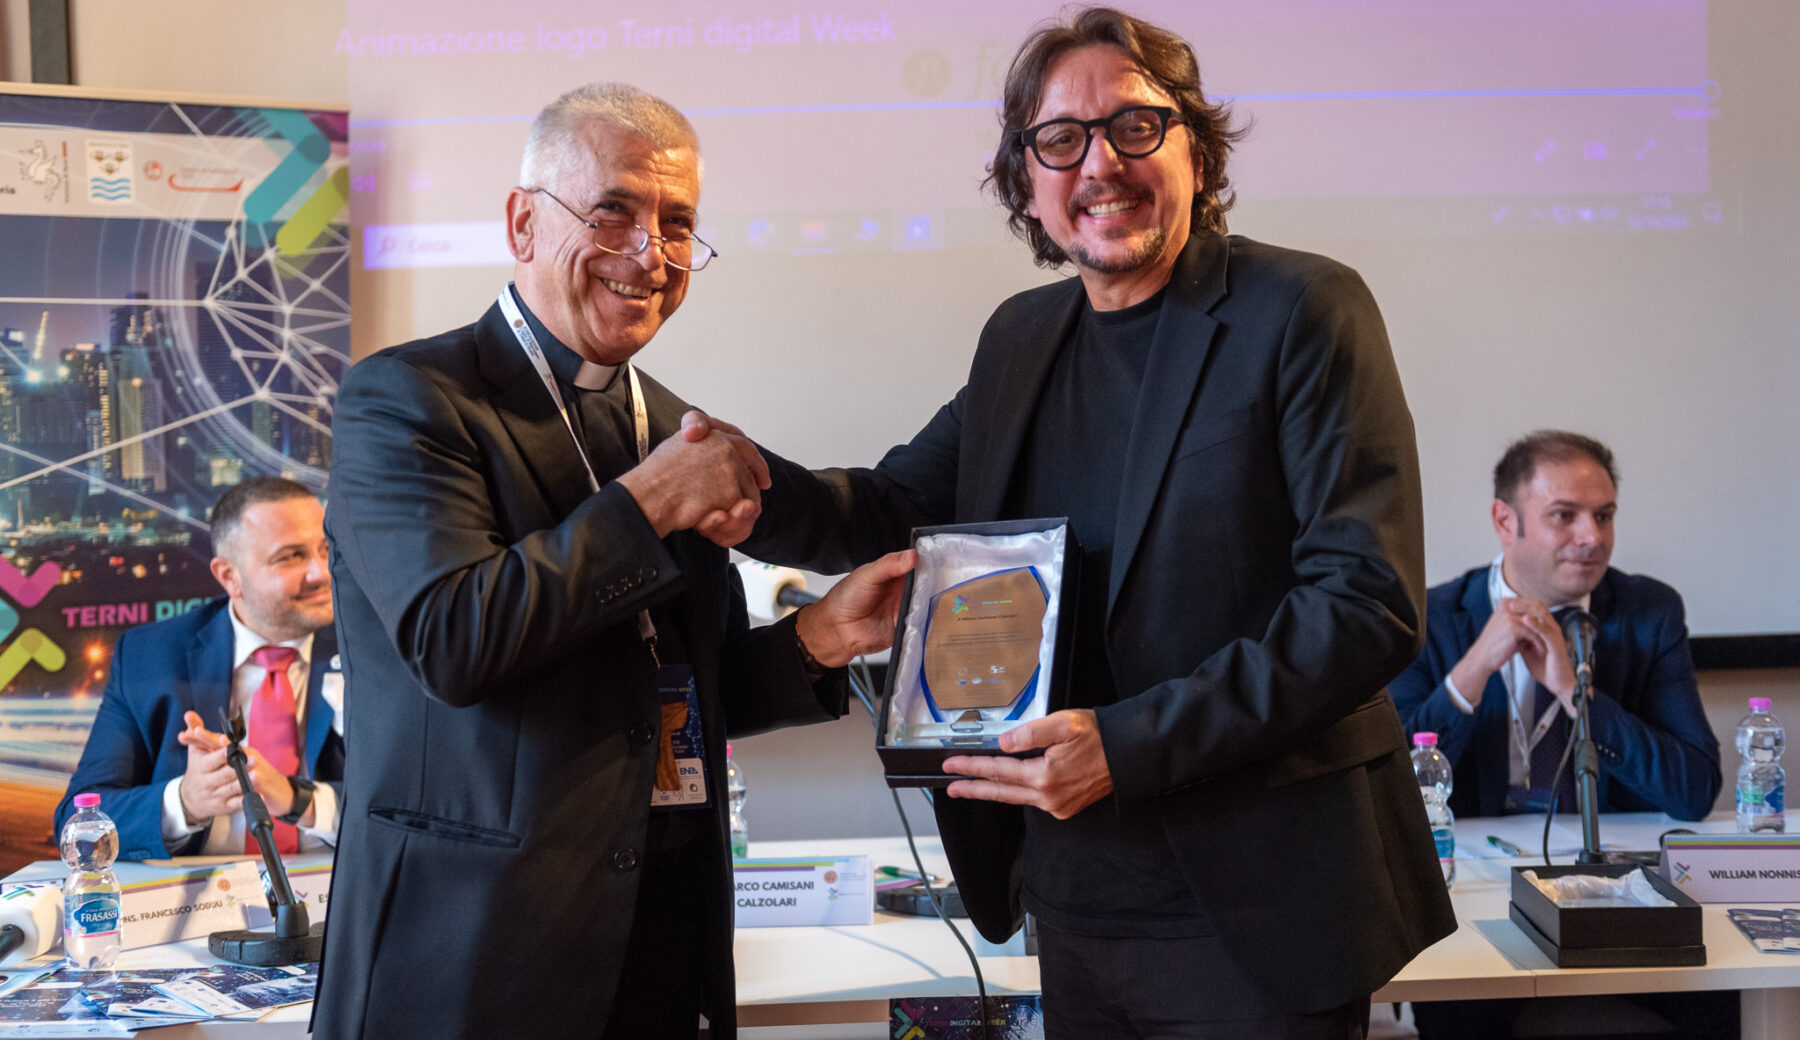 Il Premio Innovazione 2023 va a… Marco Camisani Calzolari